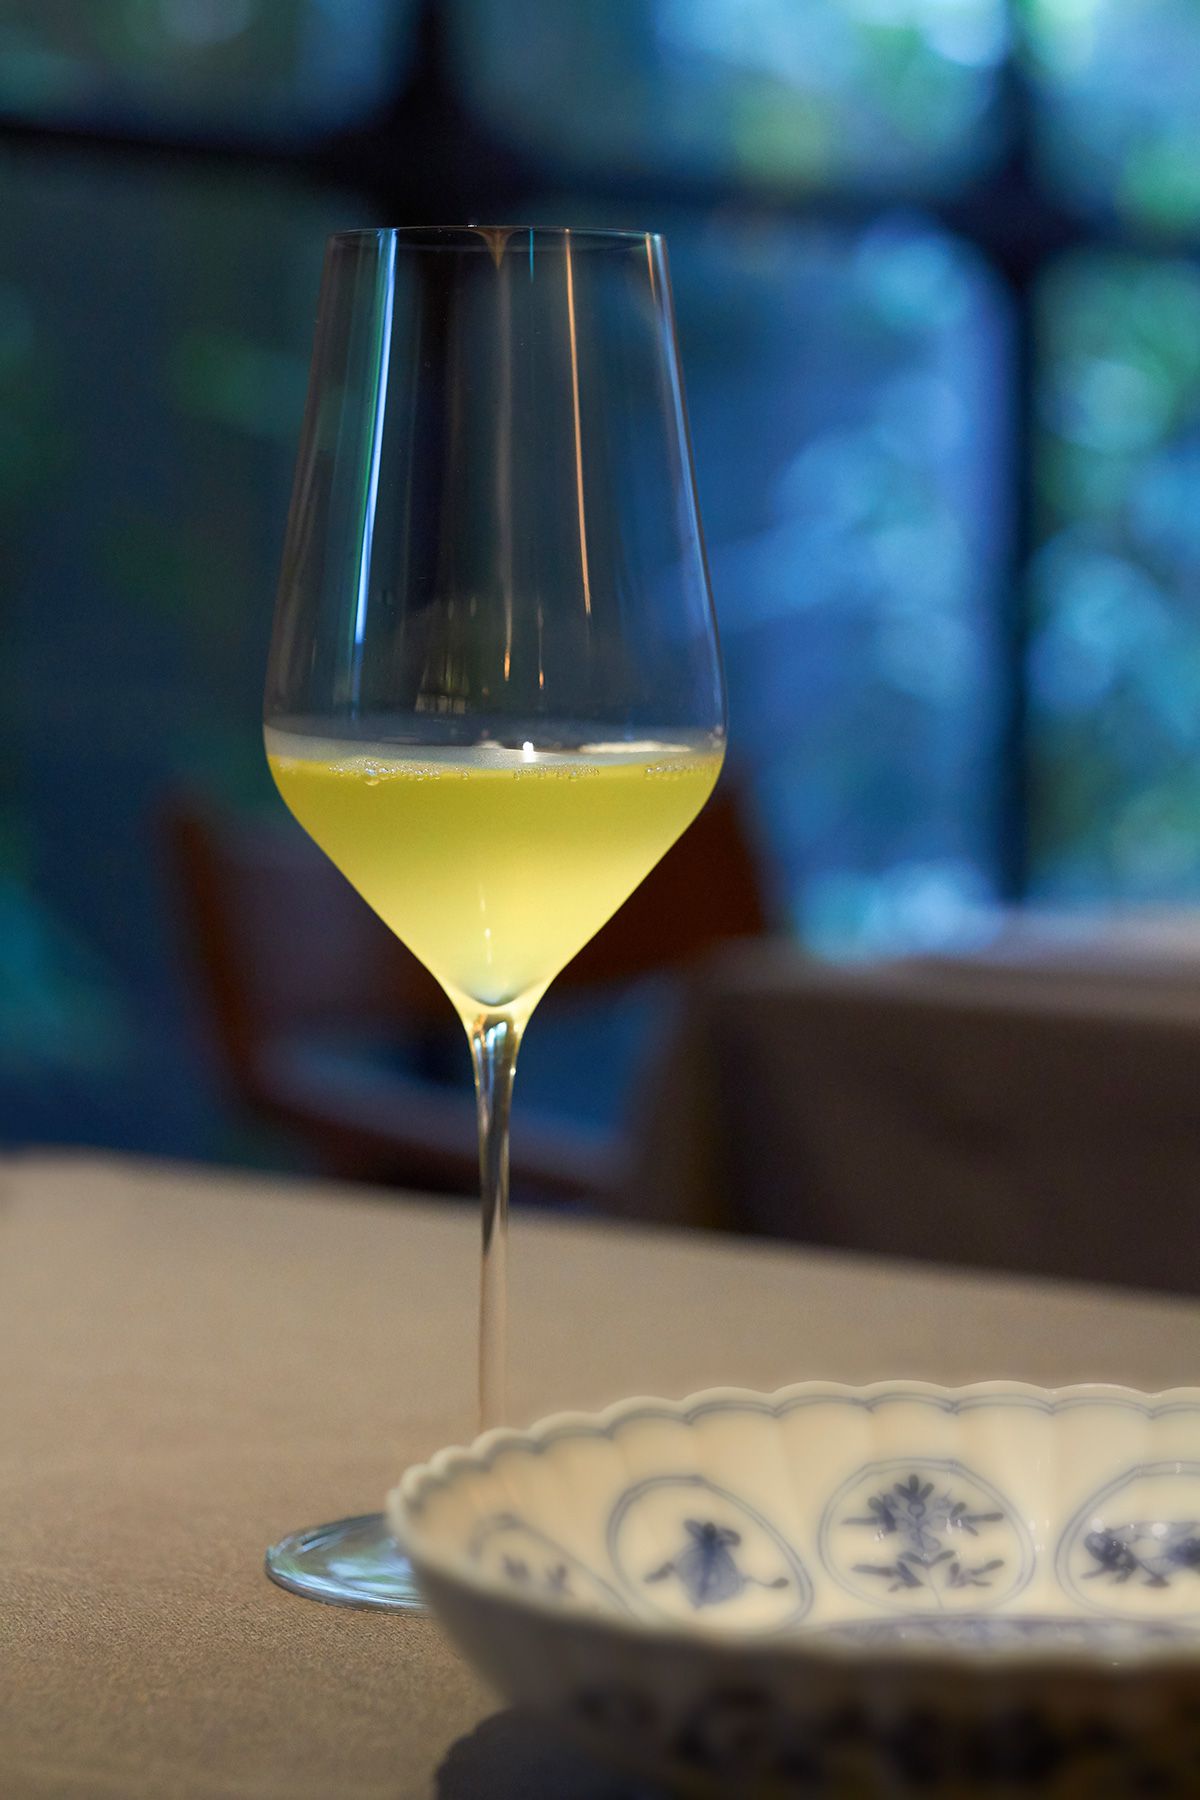 冷茶はワイングラスで出される。グラスの形のおかげで香りがよくわかる。この日の冷茶は京都の玉露だった。